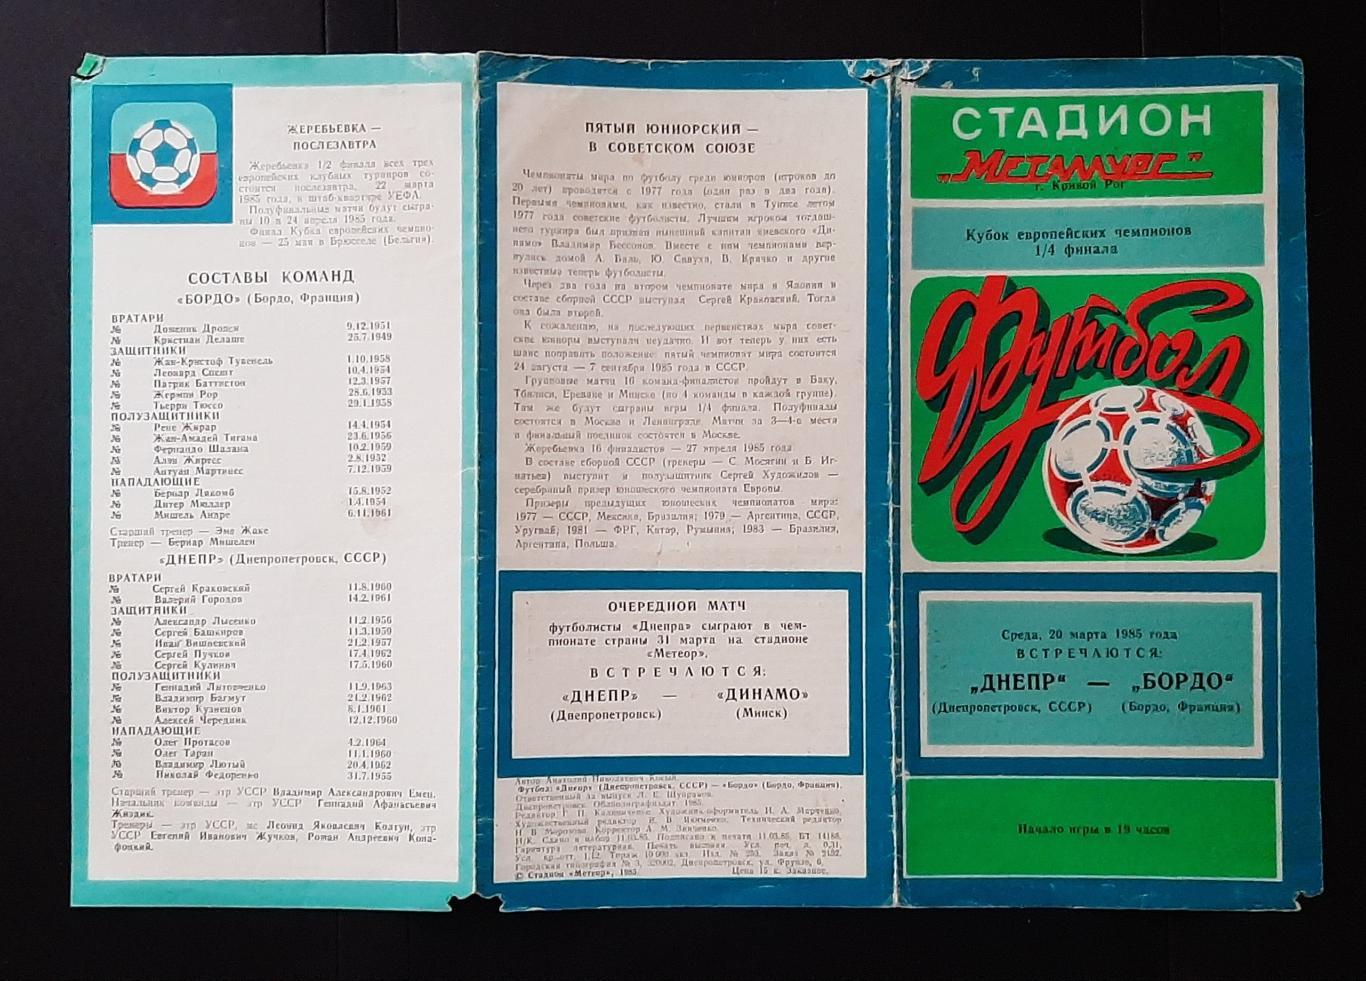 Дніпро - Бордо (20.03.1985) 1/4 фіналу Кубку Чемпіонів 1